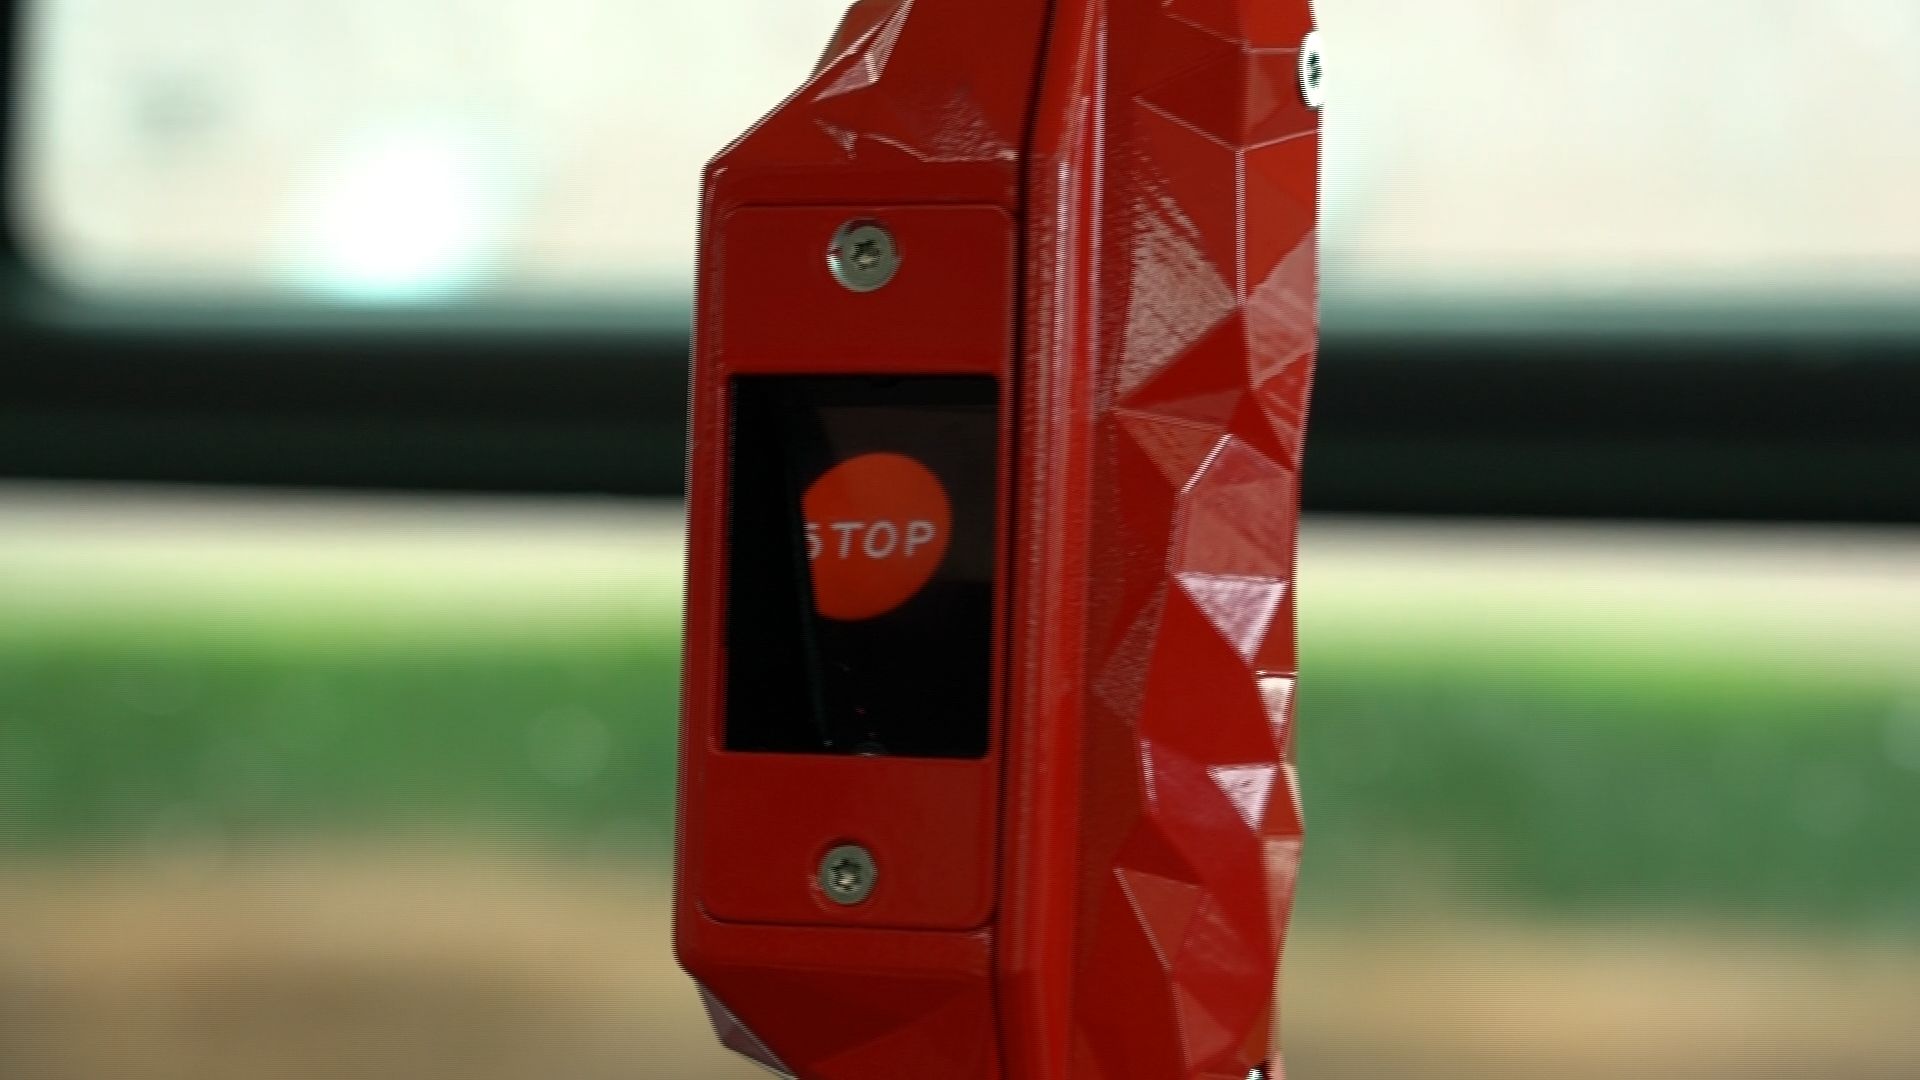 Bouton Stop holographique actif dans un autobus